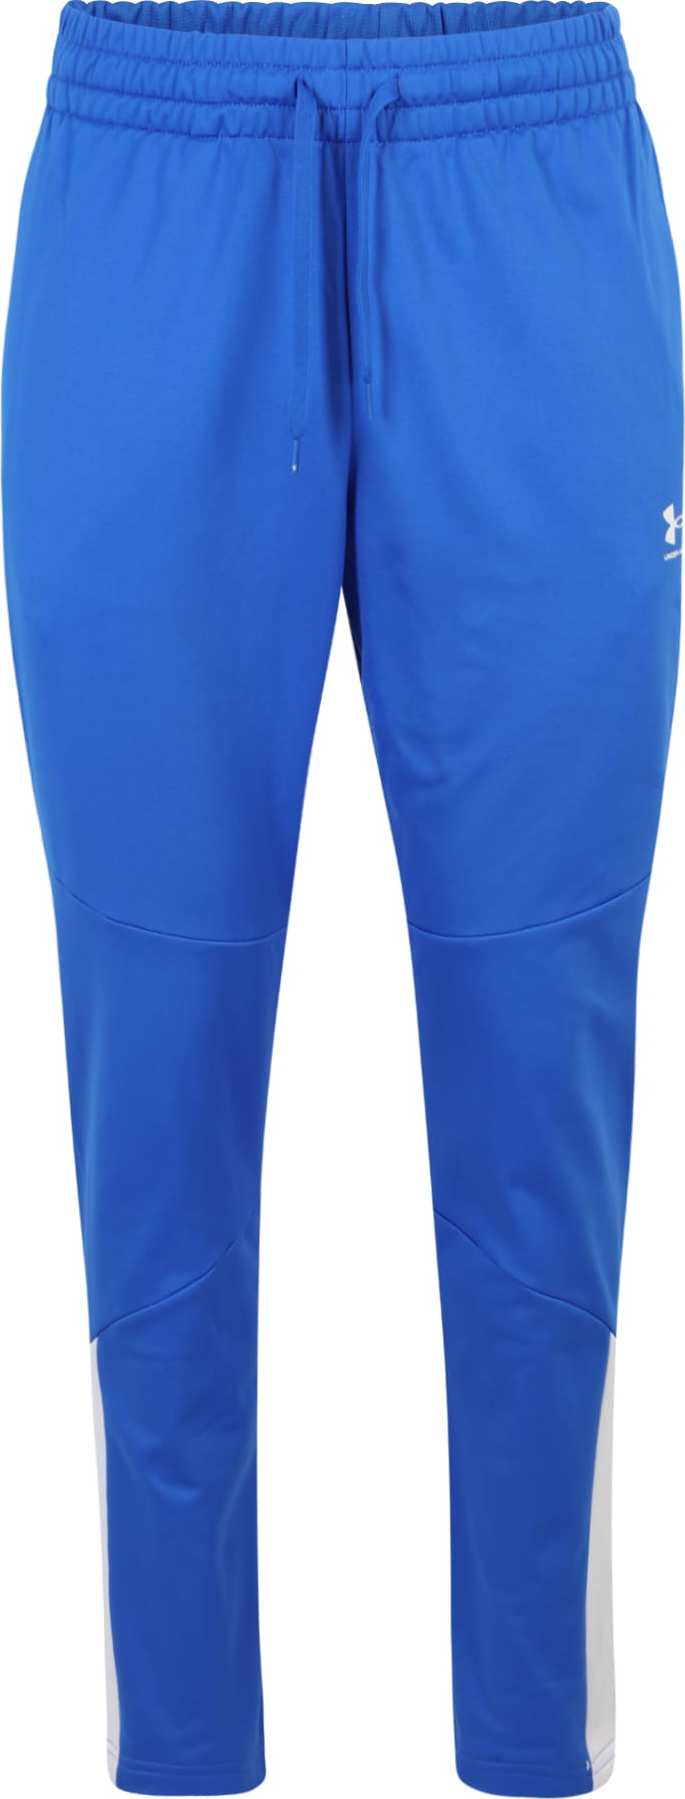 UNDER ARMOUR Sportovní kalhoty královská modrá / bílá